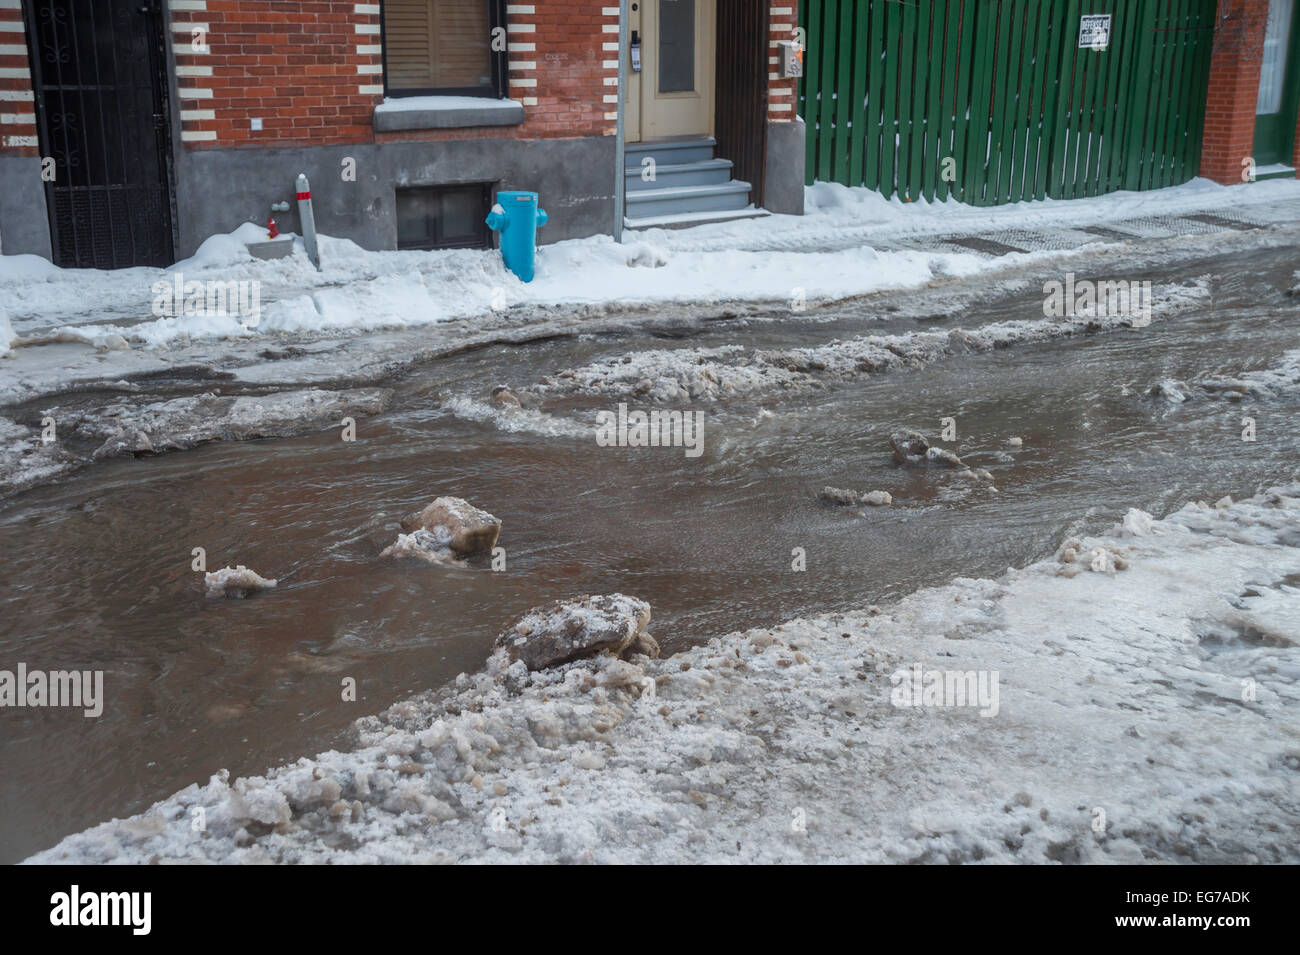 Berri Street überflutet durch Wasserrohrbruch in Montreal nach polare Temperaturen. Stockfoto